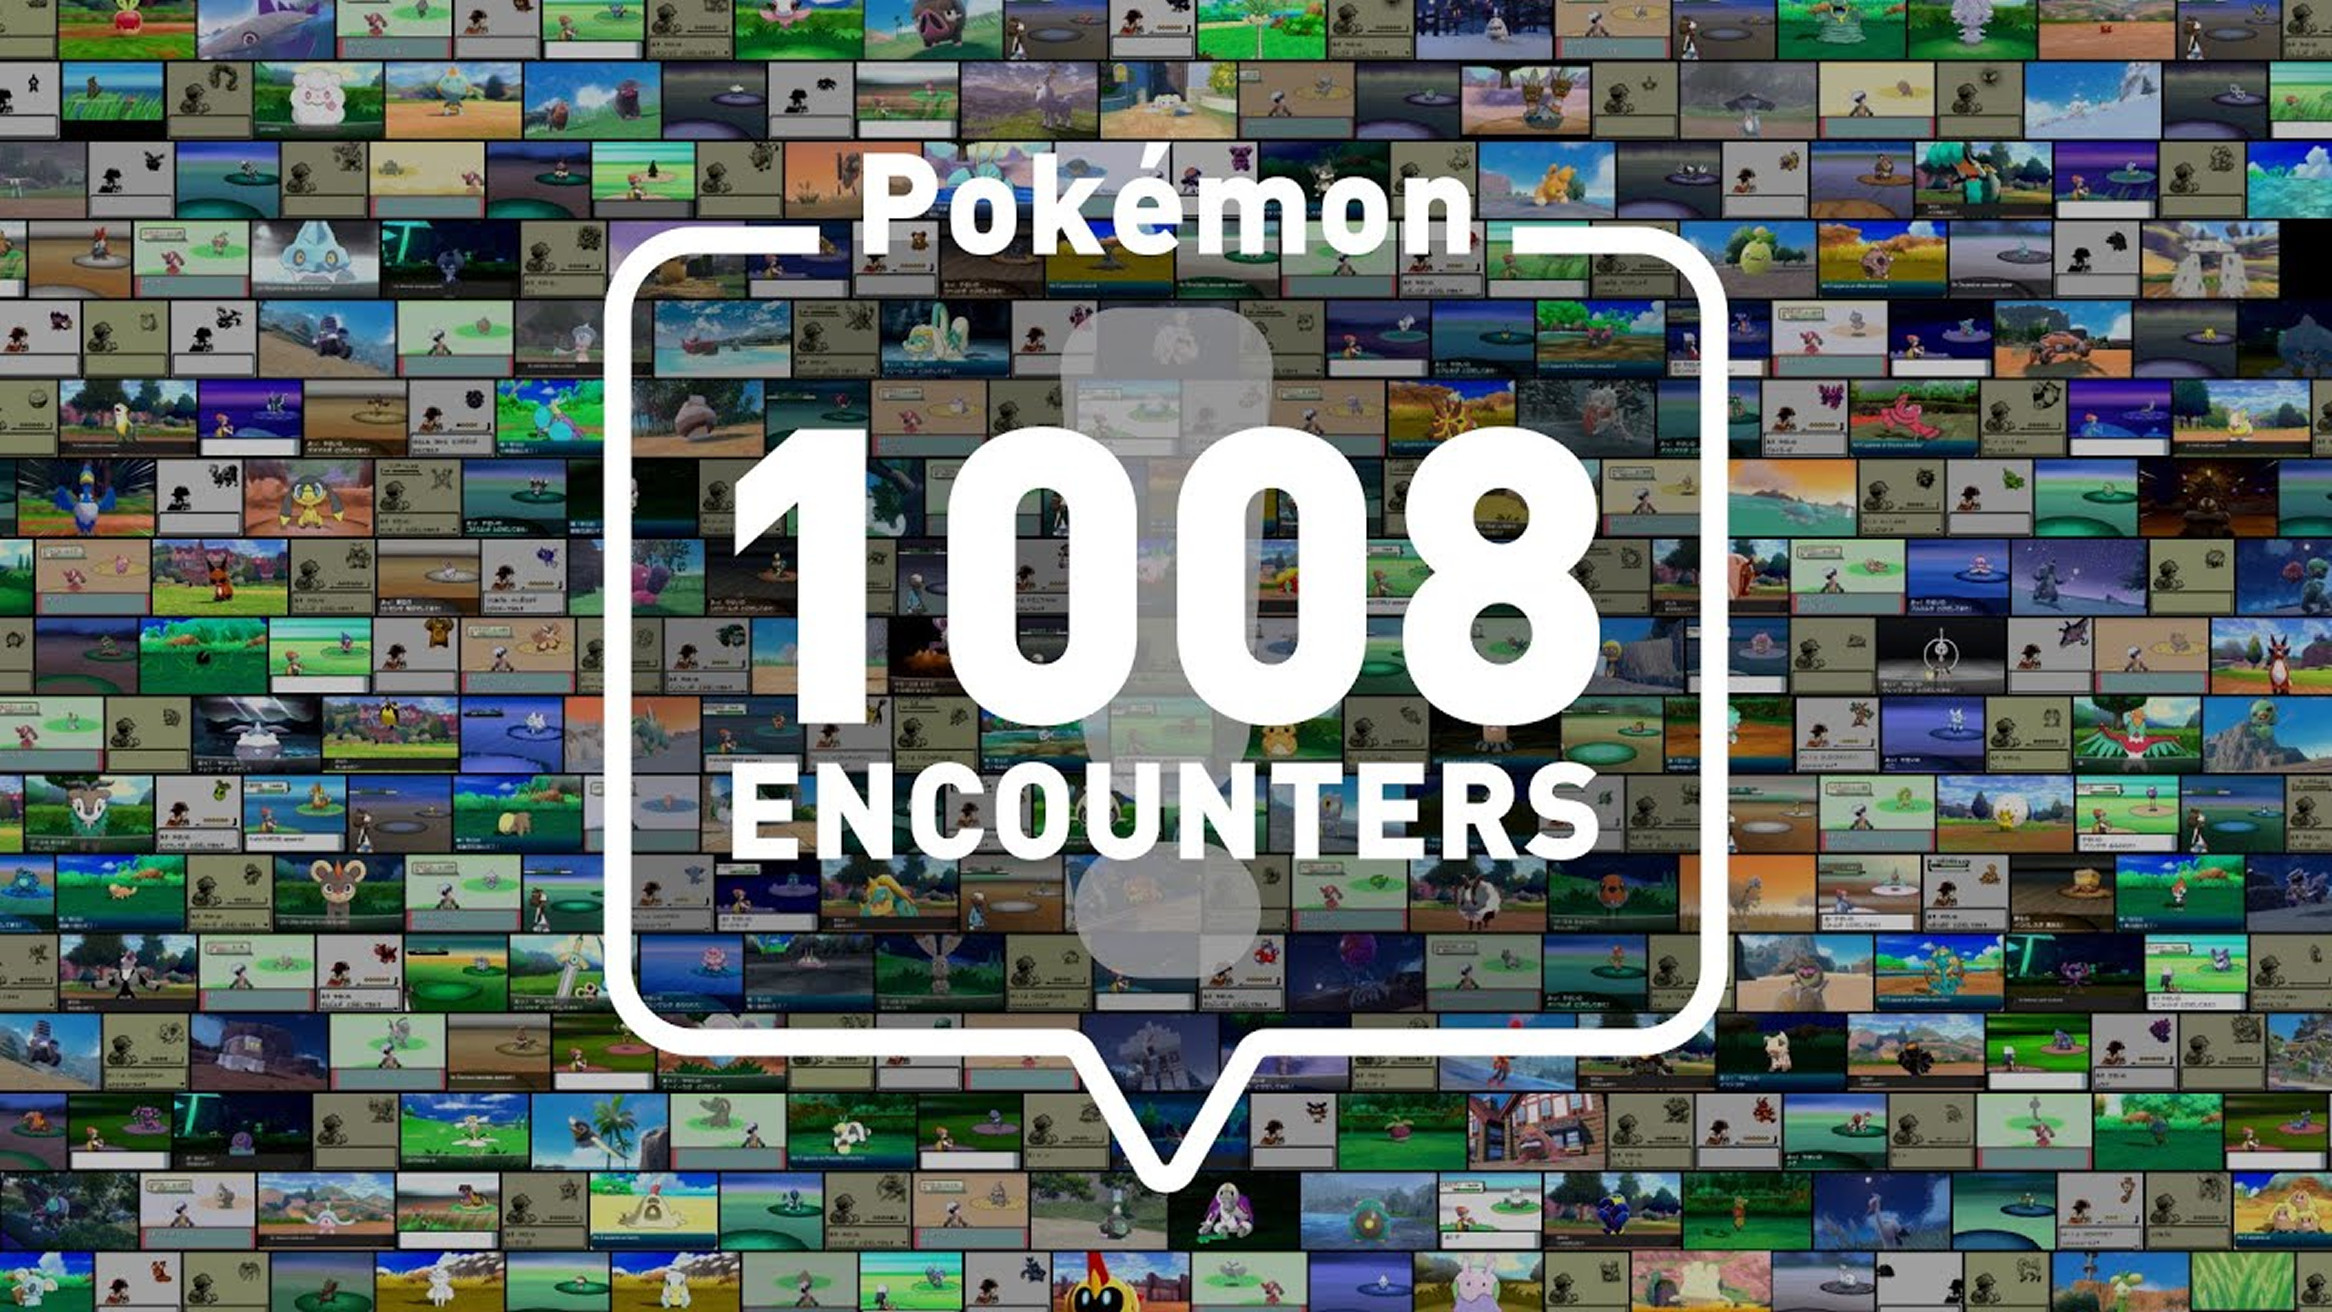 ポケモン、1000種類を突破した記念の映像。Pokemon 1008 ENCOUNTERS